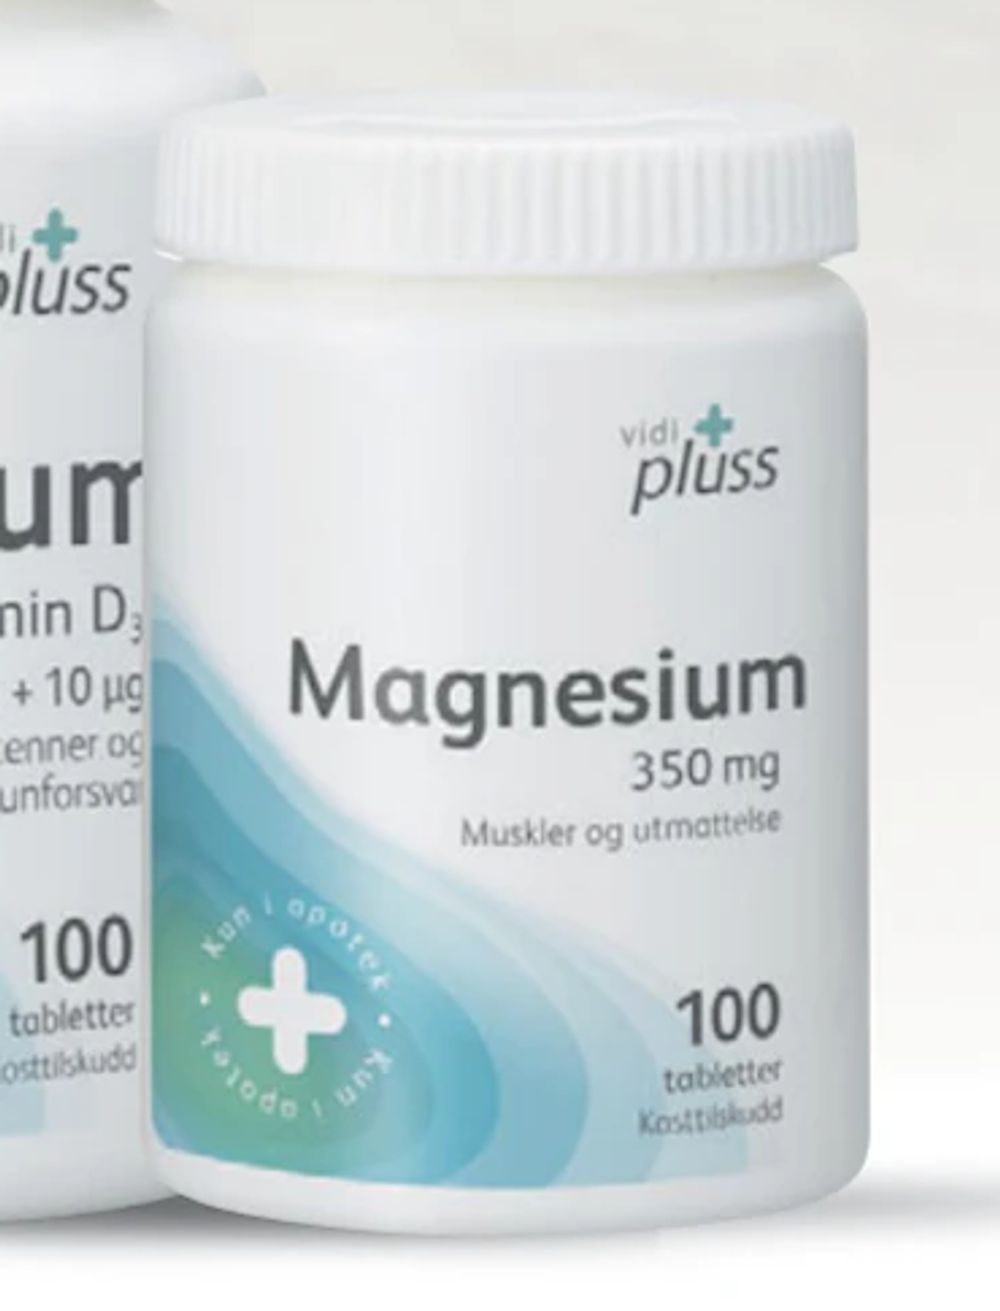 Tilbud på Vidi pluss Magnesium 350 mg 100 tabletter fra Vitusapotek til 101,50 kr